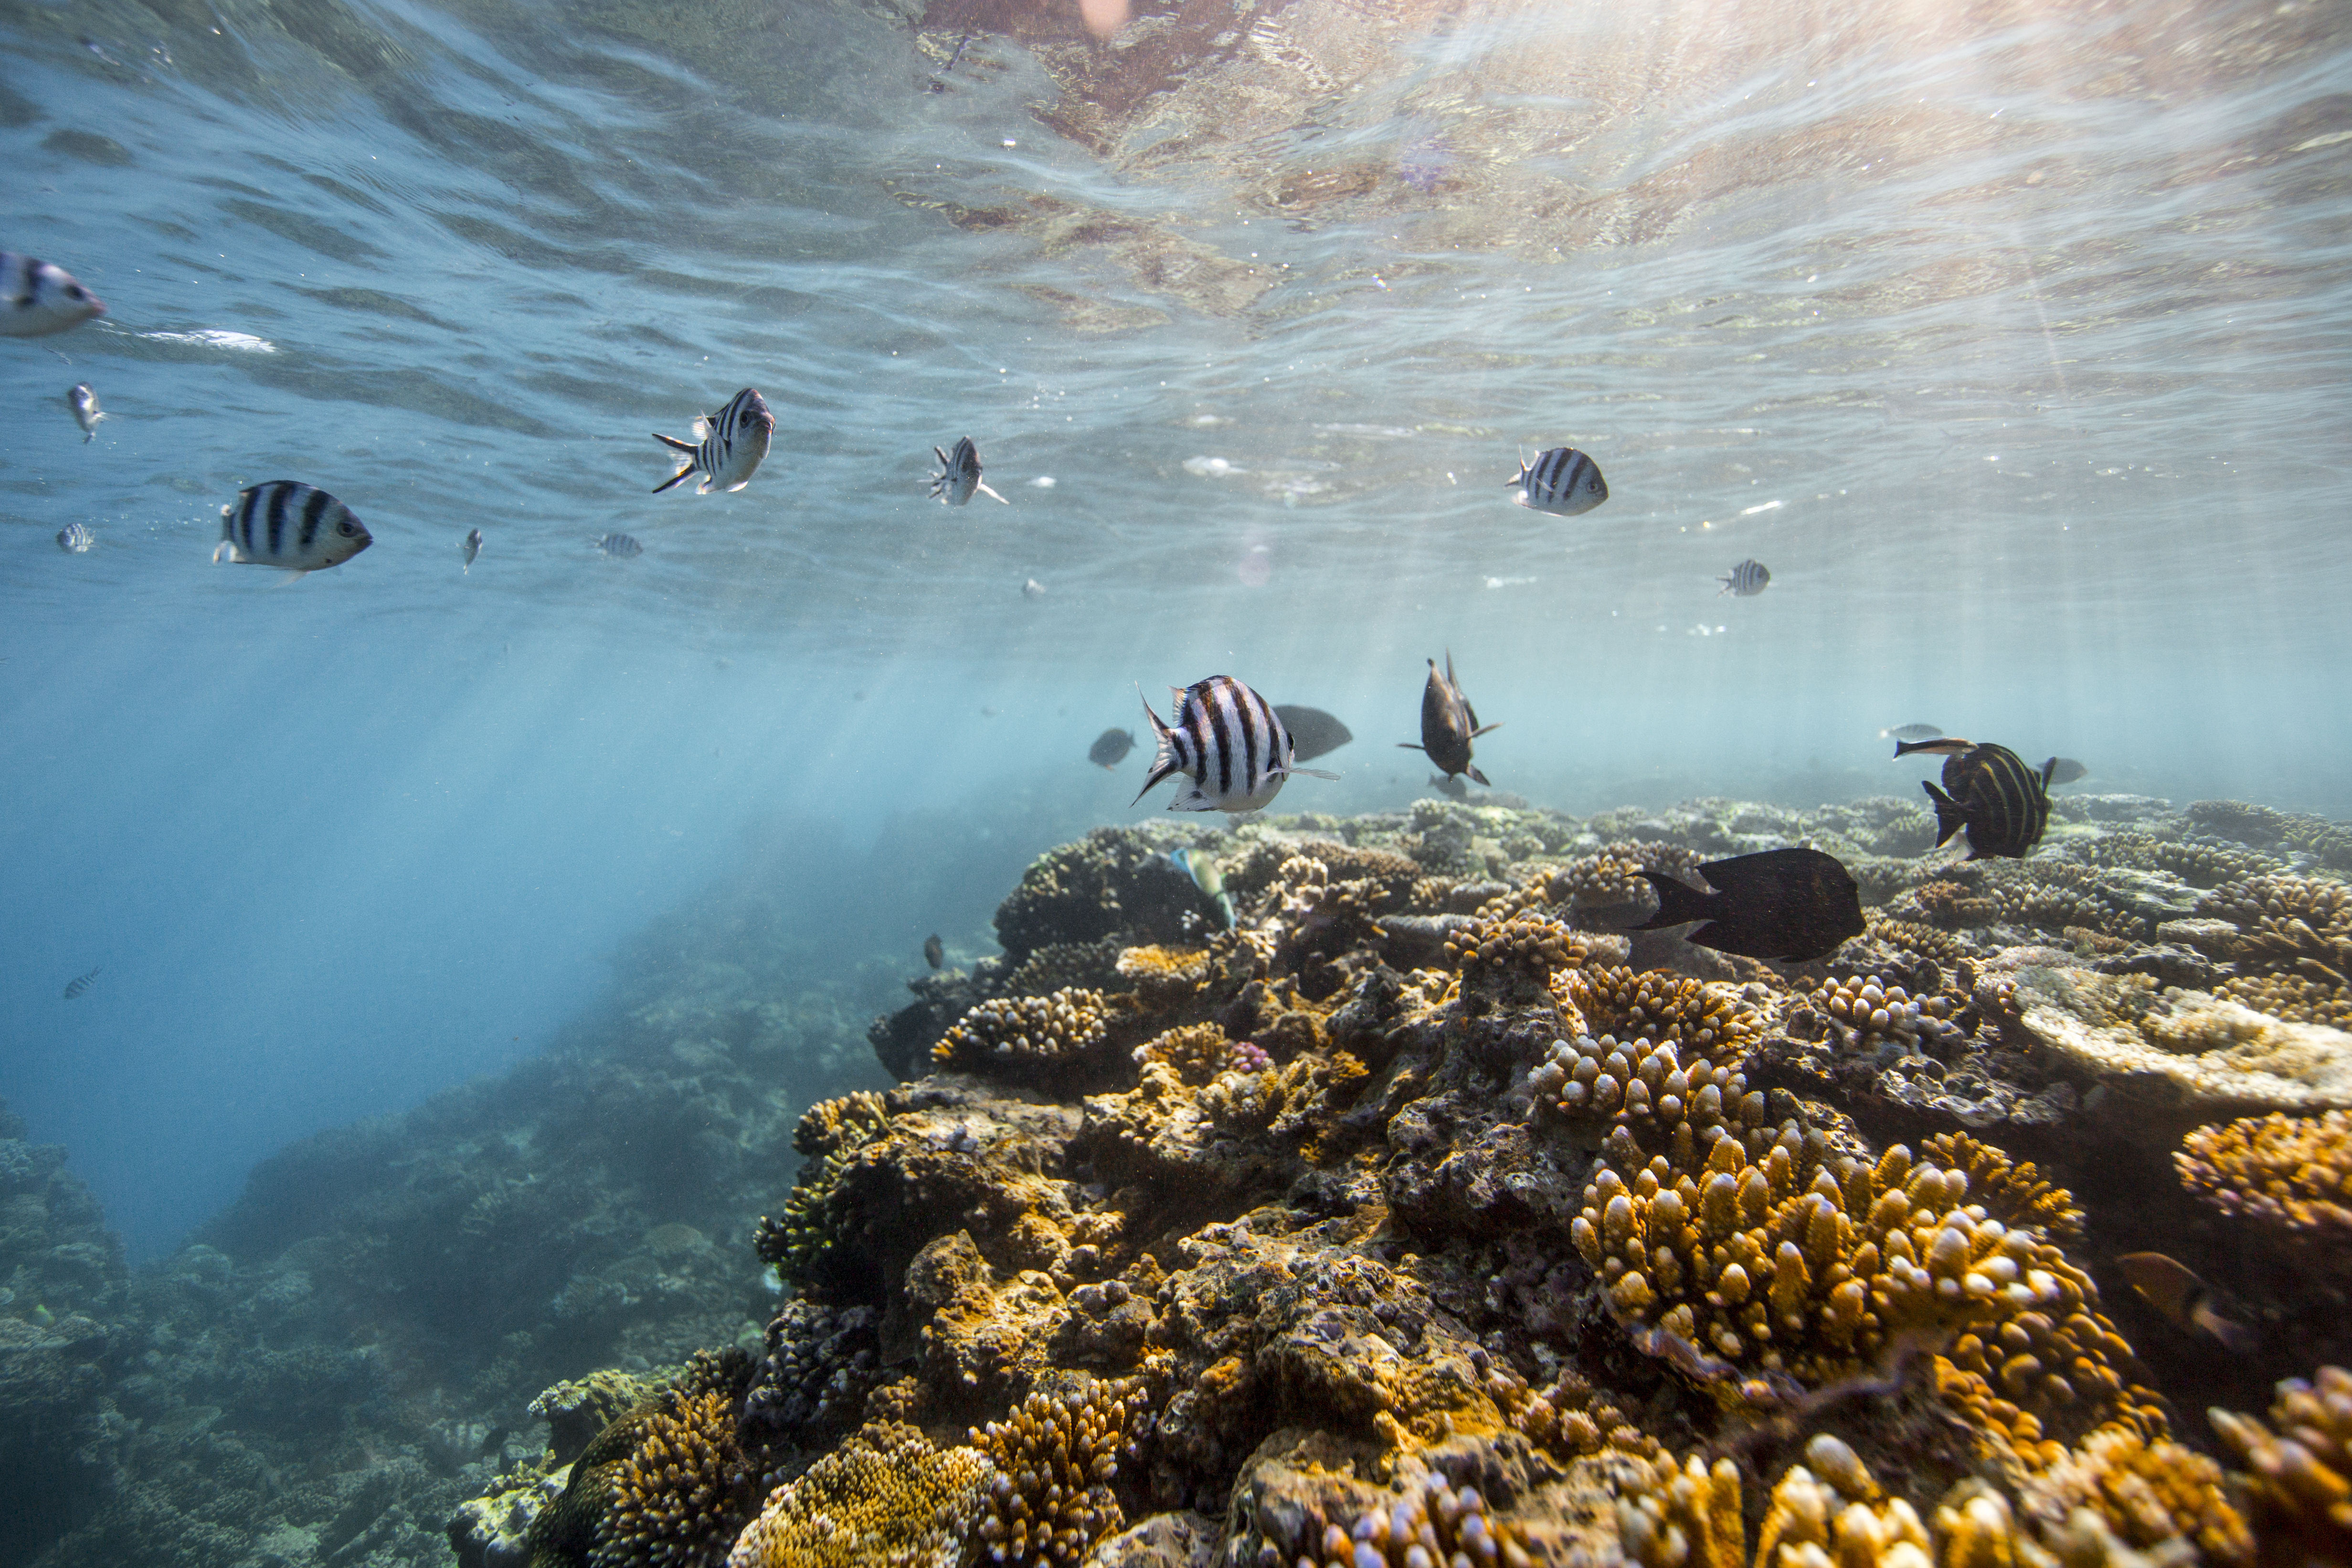 Du lịch Úc khám phá Great Barrier Reef: Nơi bình minh trỗi dậy từ biển cả | TOPTOUR